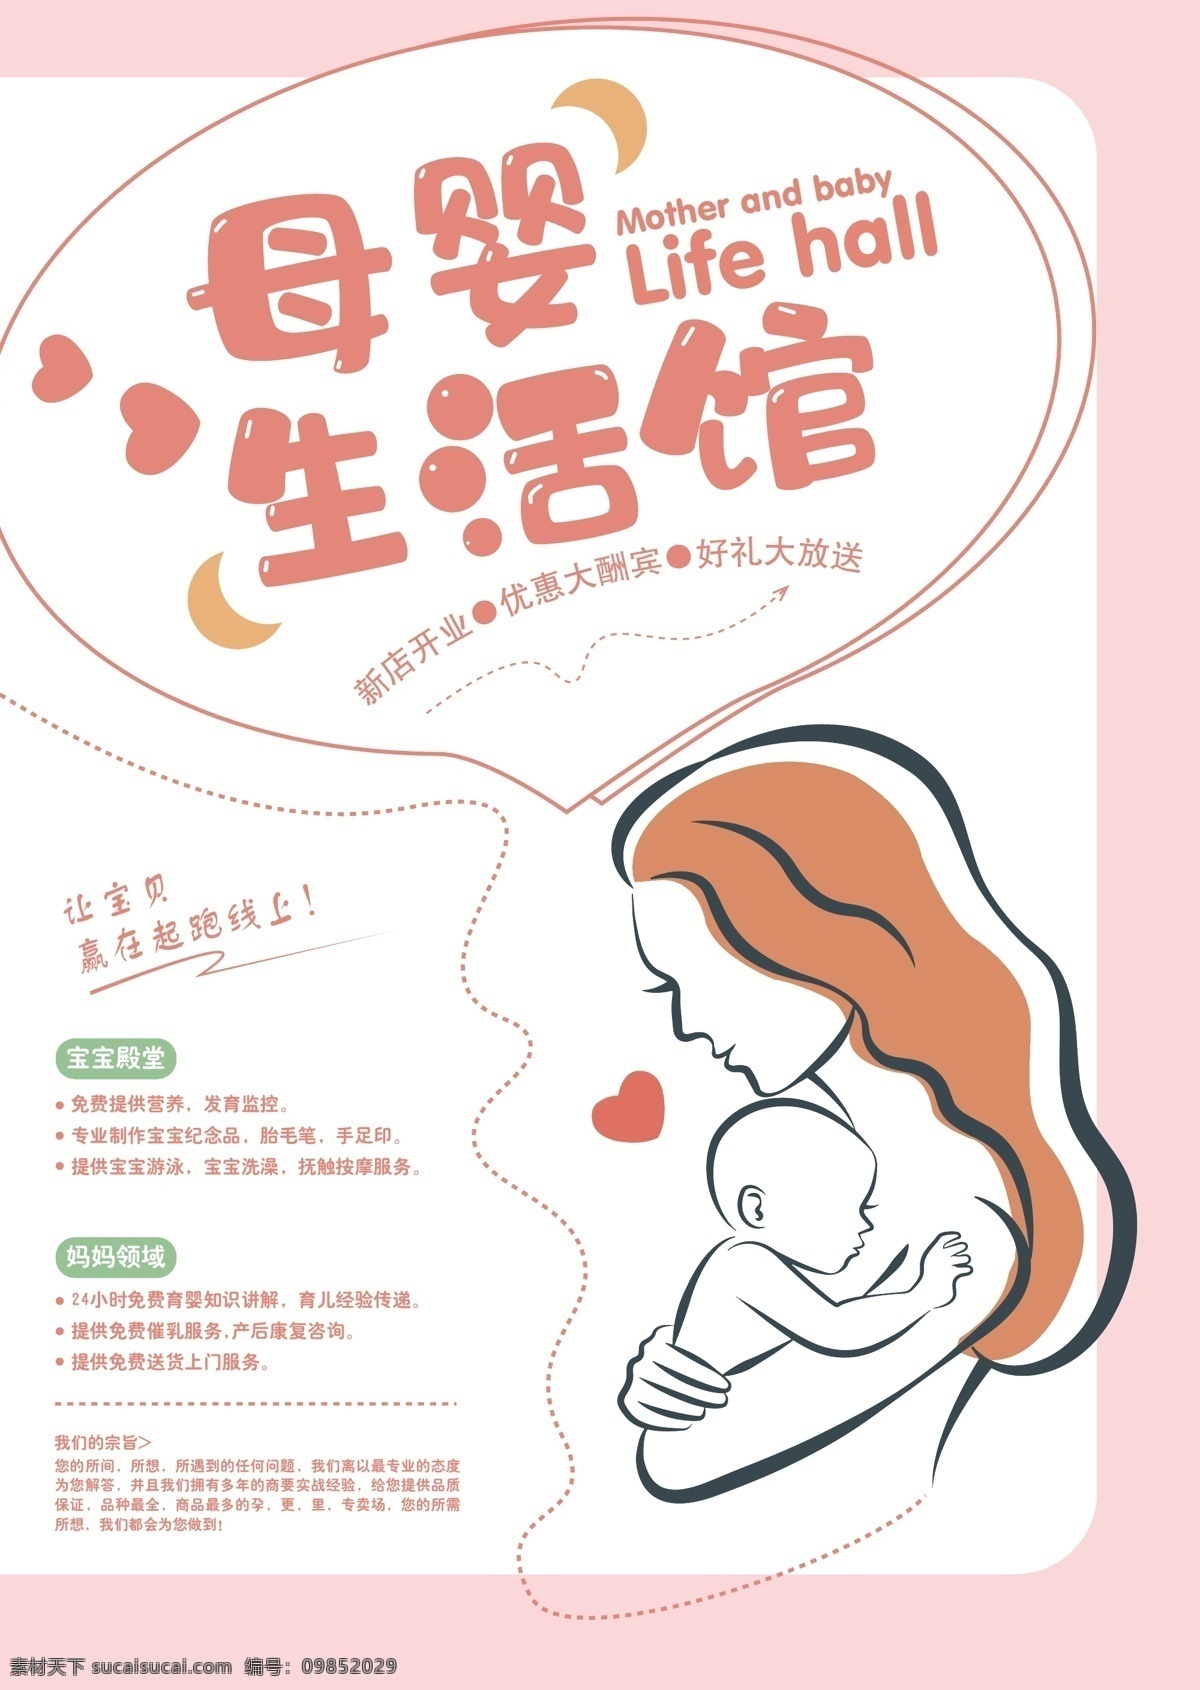 母婴 生活 体验 馆 海报 宣传单 婴儿 展架 生活馆